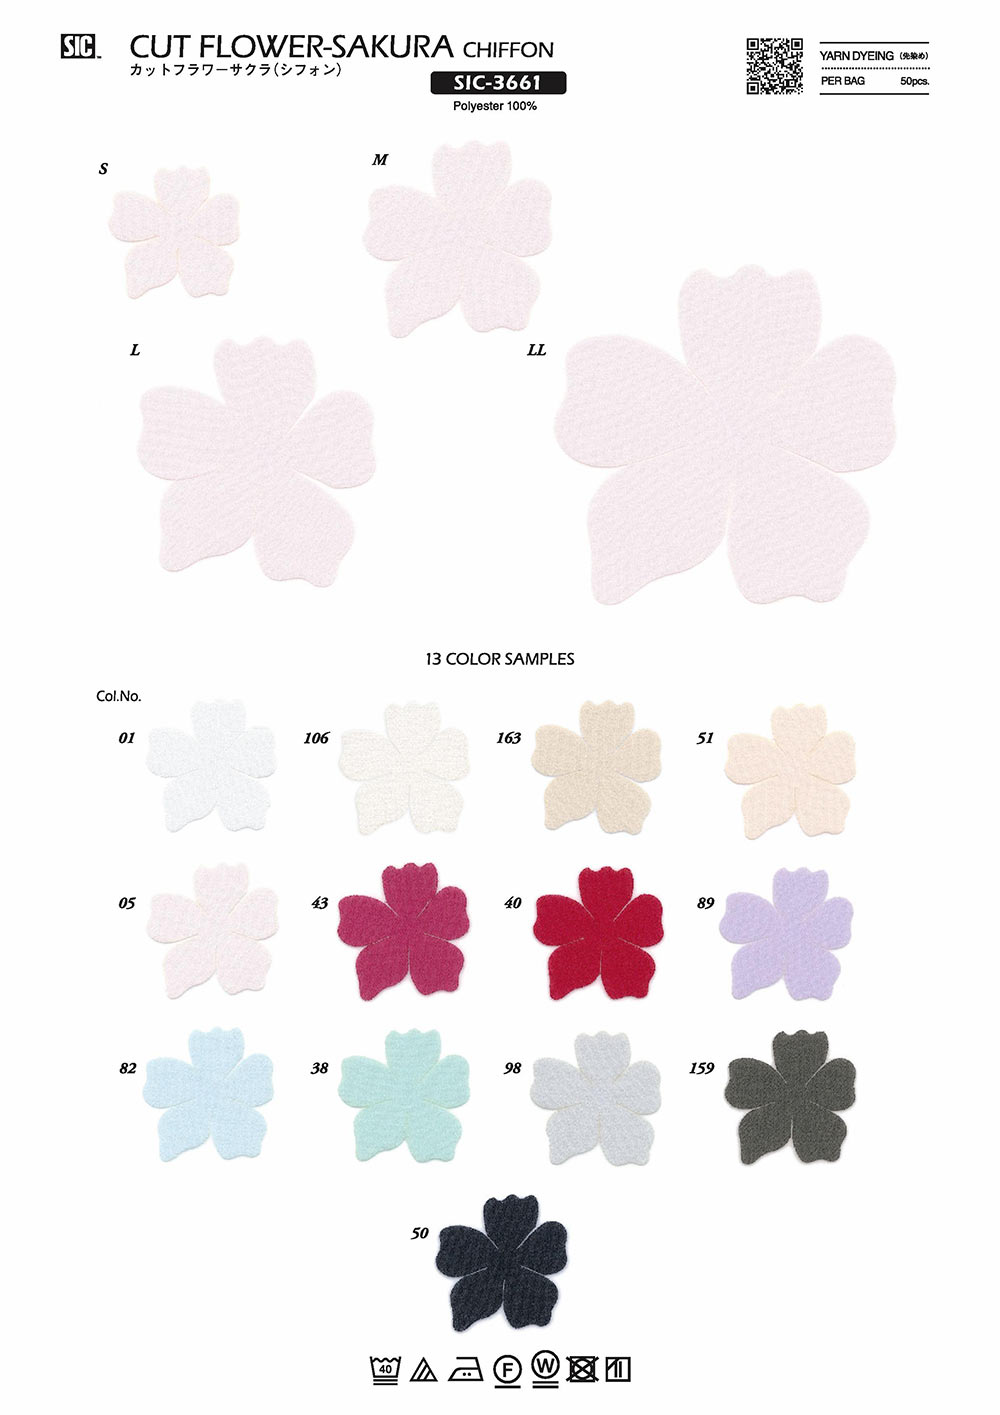 SIC-3661 Schnittblume Sakura (Chiffon)[Verschiedene Waren Und Andere] SHINDO(SIC)